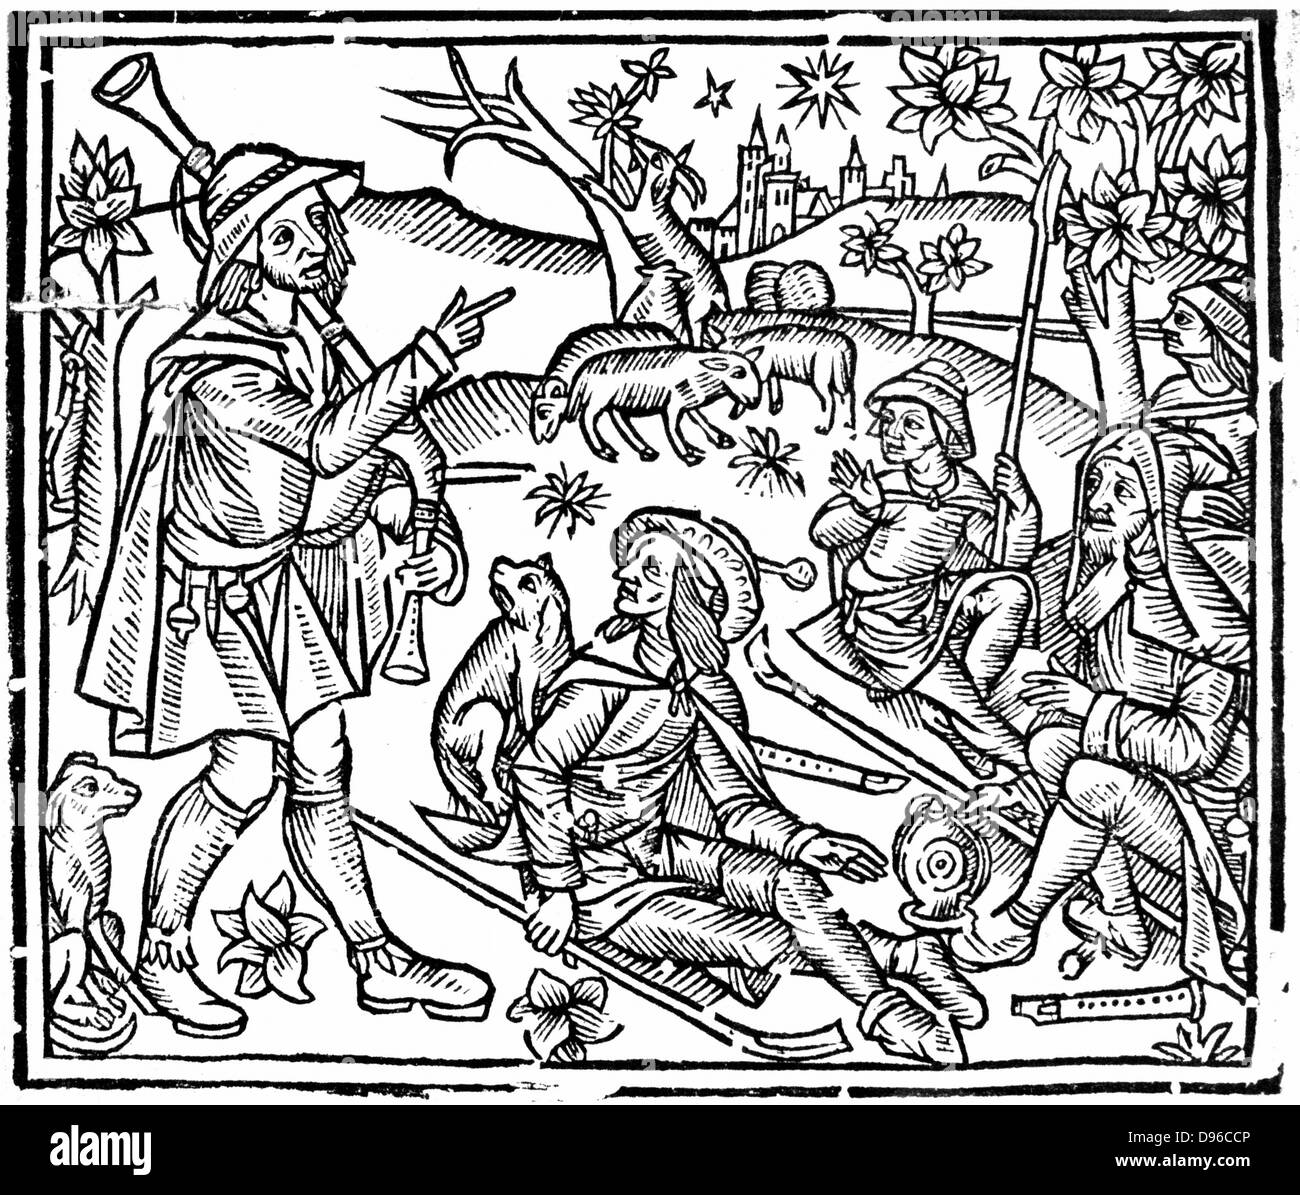 Les bergers avec leurs troupeaux et les chiens. La figure de gauche est tenue et cornemuse, ainsi que d'escrocs pour manipuler les moutons, il y a des instruments à vent sur le terrain. Gravure sur bois à partir de début du 16ème siècle de l'édition anglaise de "l'Shepheards Kalendar'. Banque D'Images